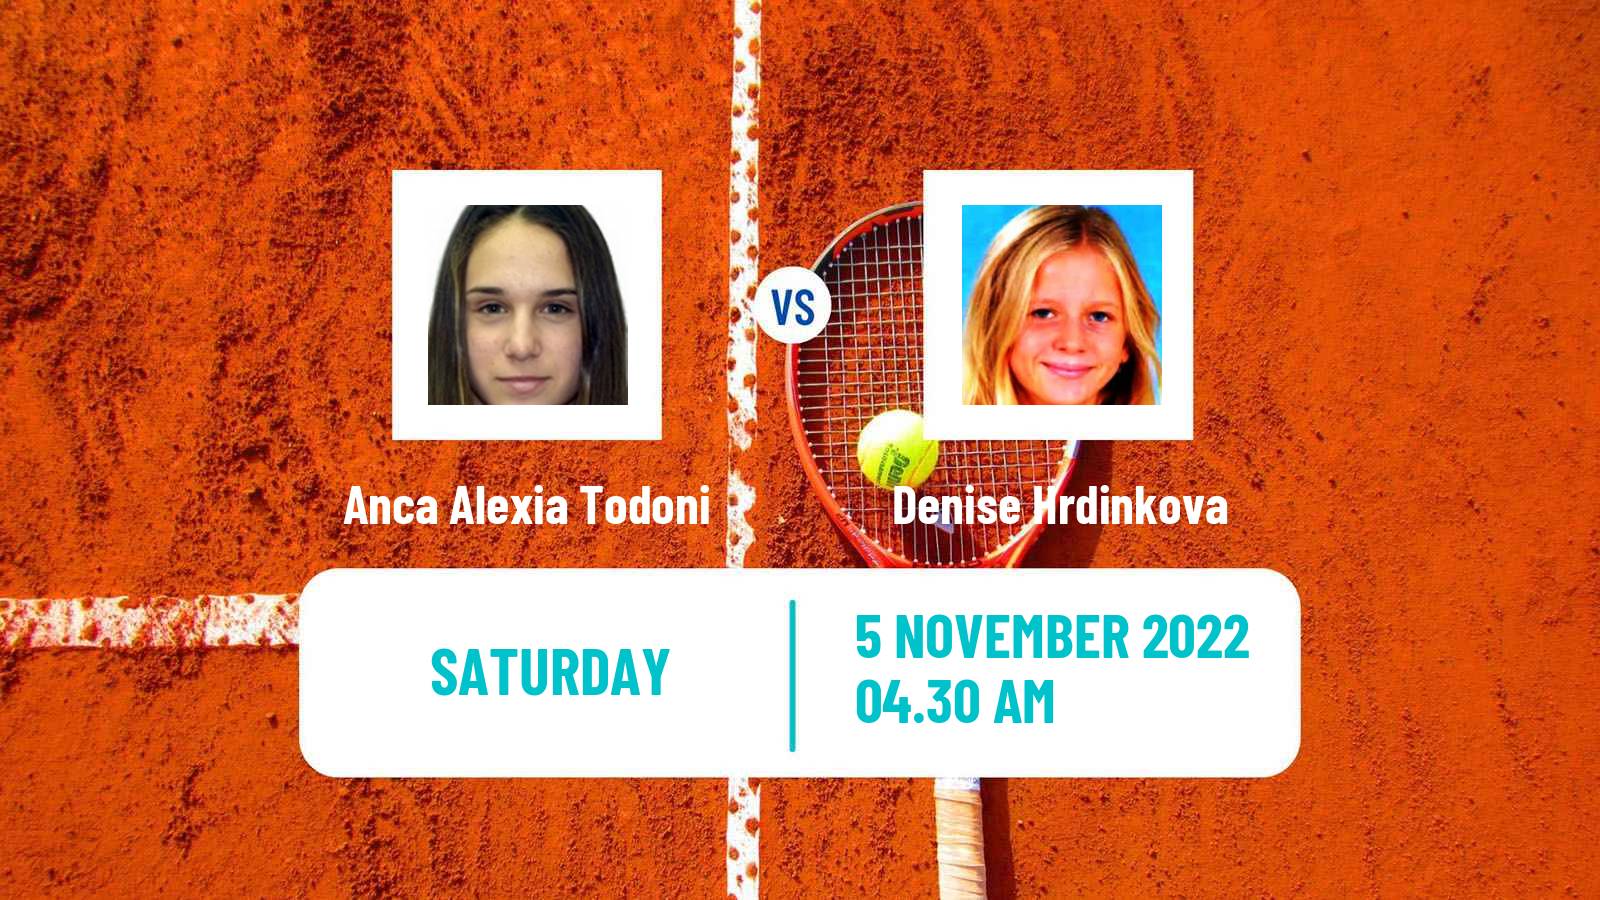 Tennis ITF Tournaments Anca Alexia Todoni - Denise Hrdinkova